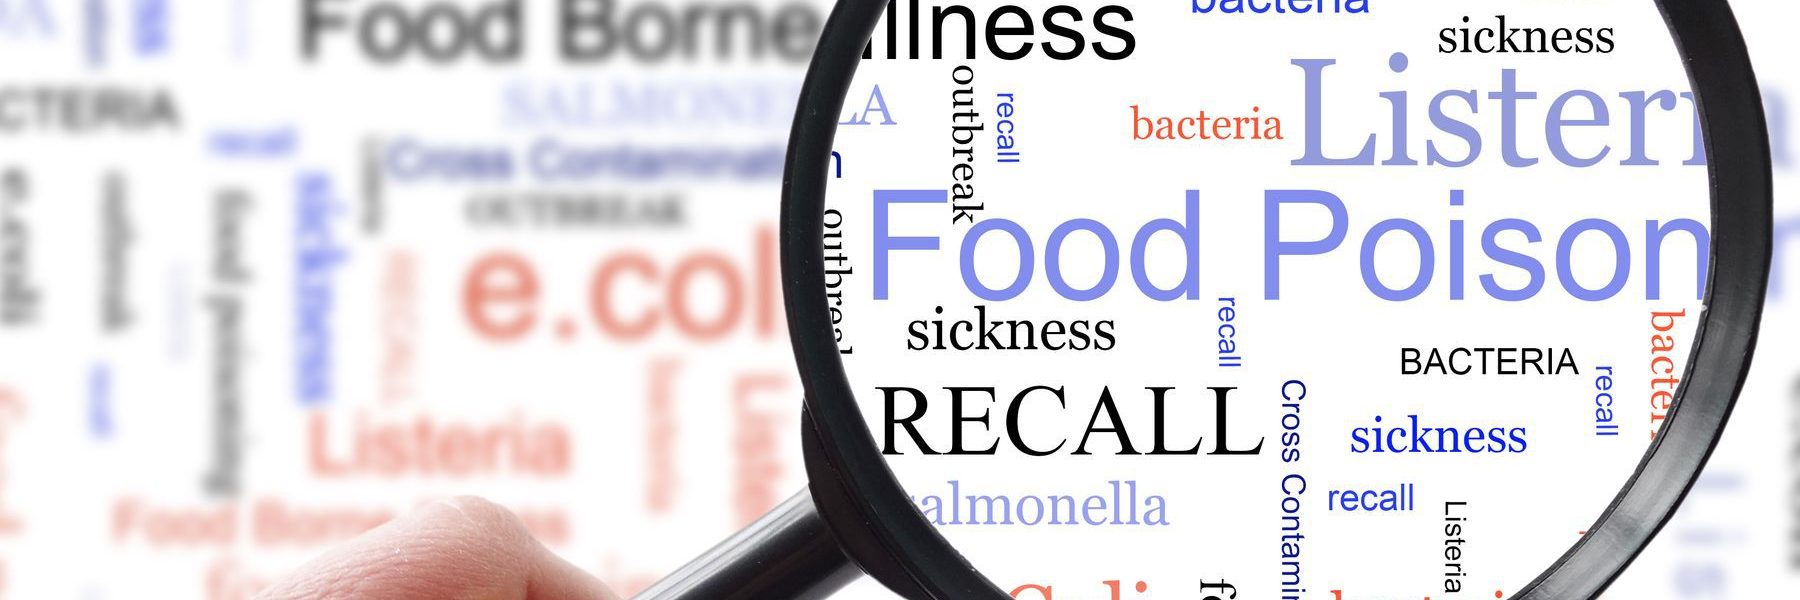 recalls of contaminated food